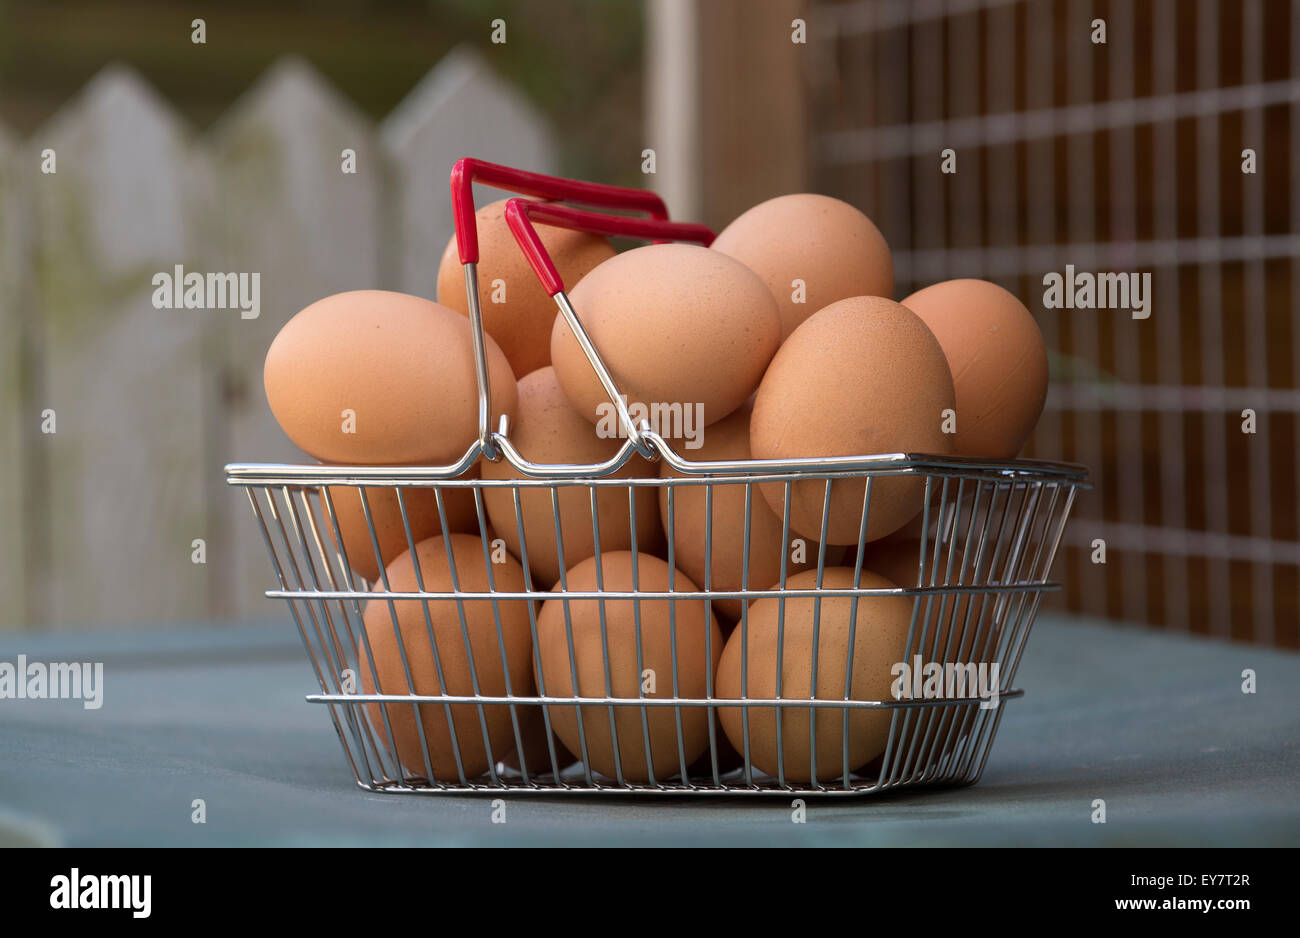 Free Range brown pollos frescos huevos en una cesta de alambre pequeño de metal con un mango rojo Foto de stock